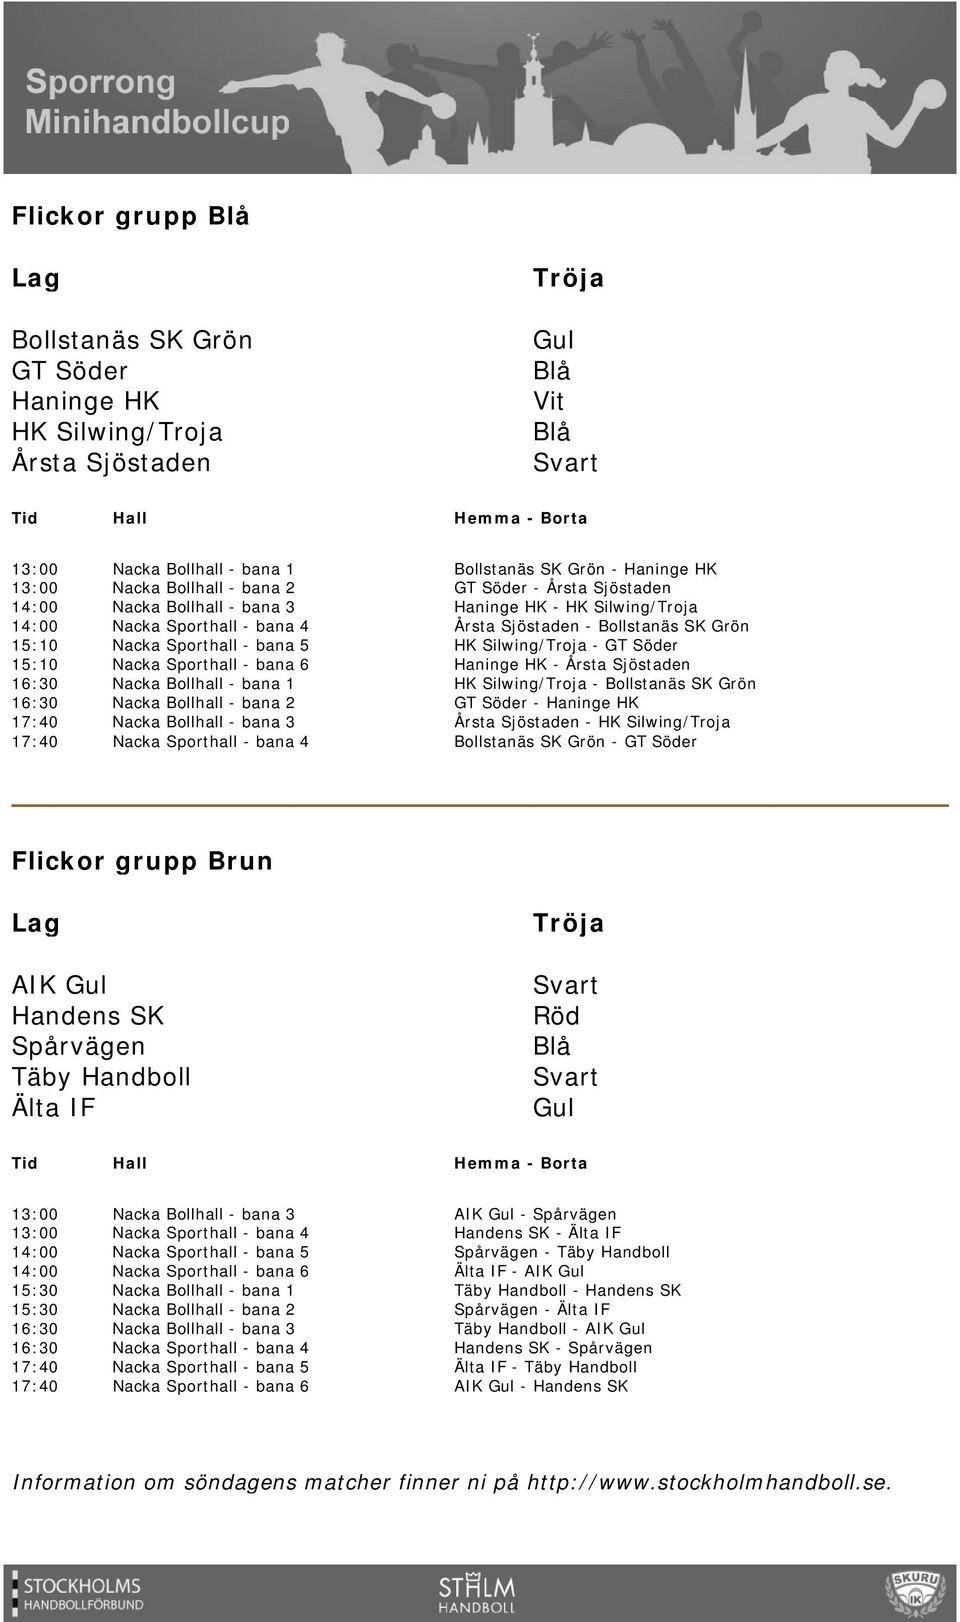 Sjöstaden - HK Silwing/Troja Bollstanäs SK - GT Söder Flickor grupp Brun AIK Gul Handens SK Spårvägen Täby Handboll Älta IF Gul 13:00 13:00 14:00 14:00 15:30 15:30 16:30 16:30 17:40 17:40 AIK Gul -